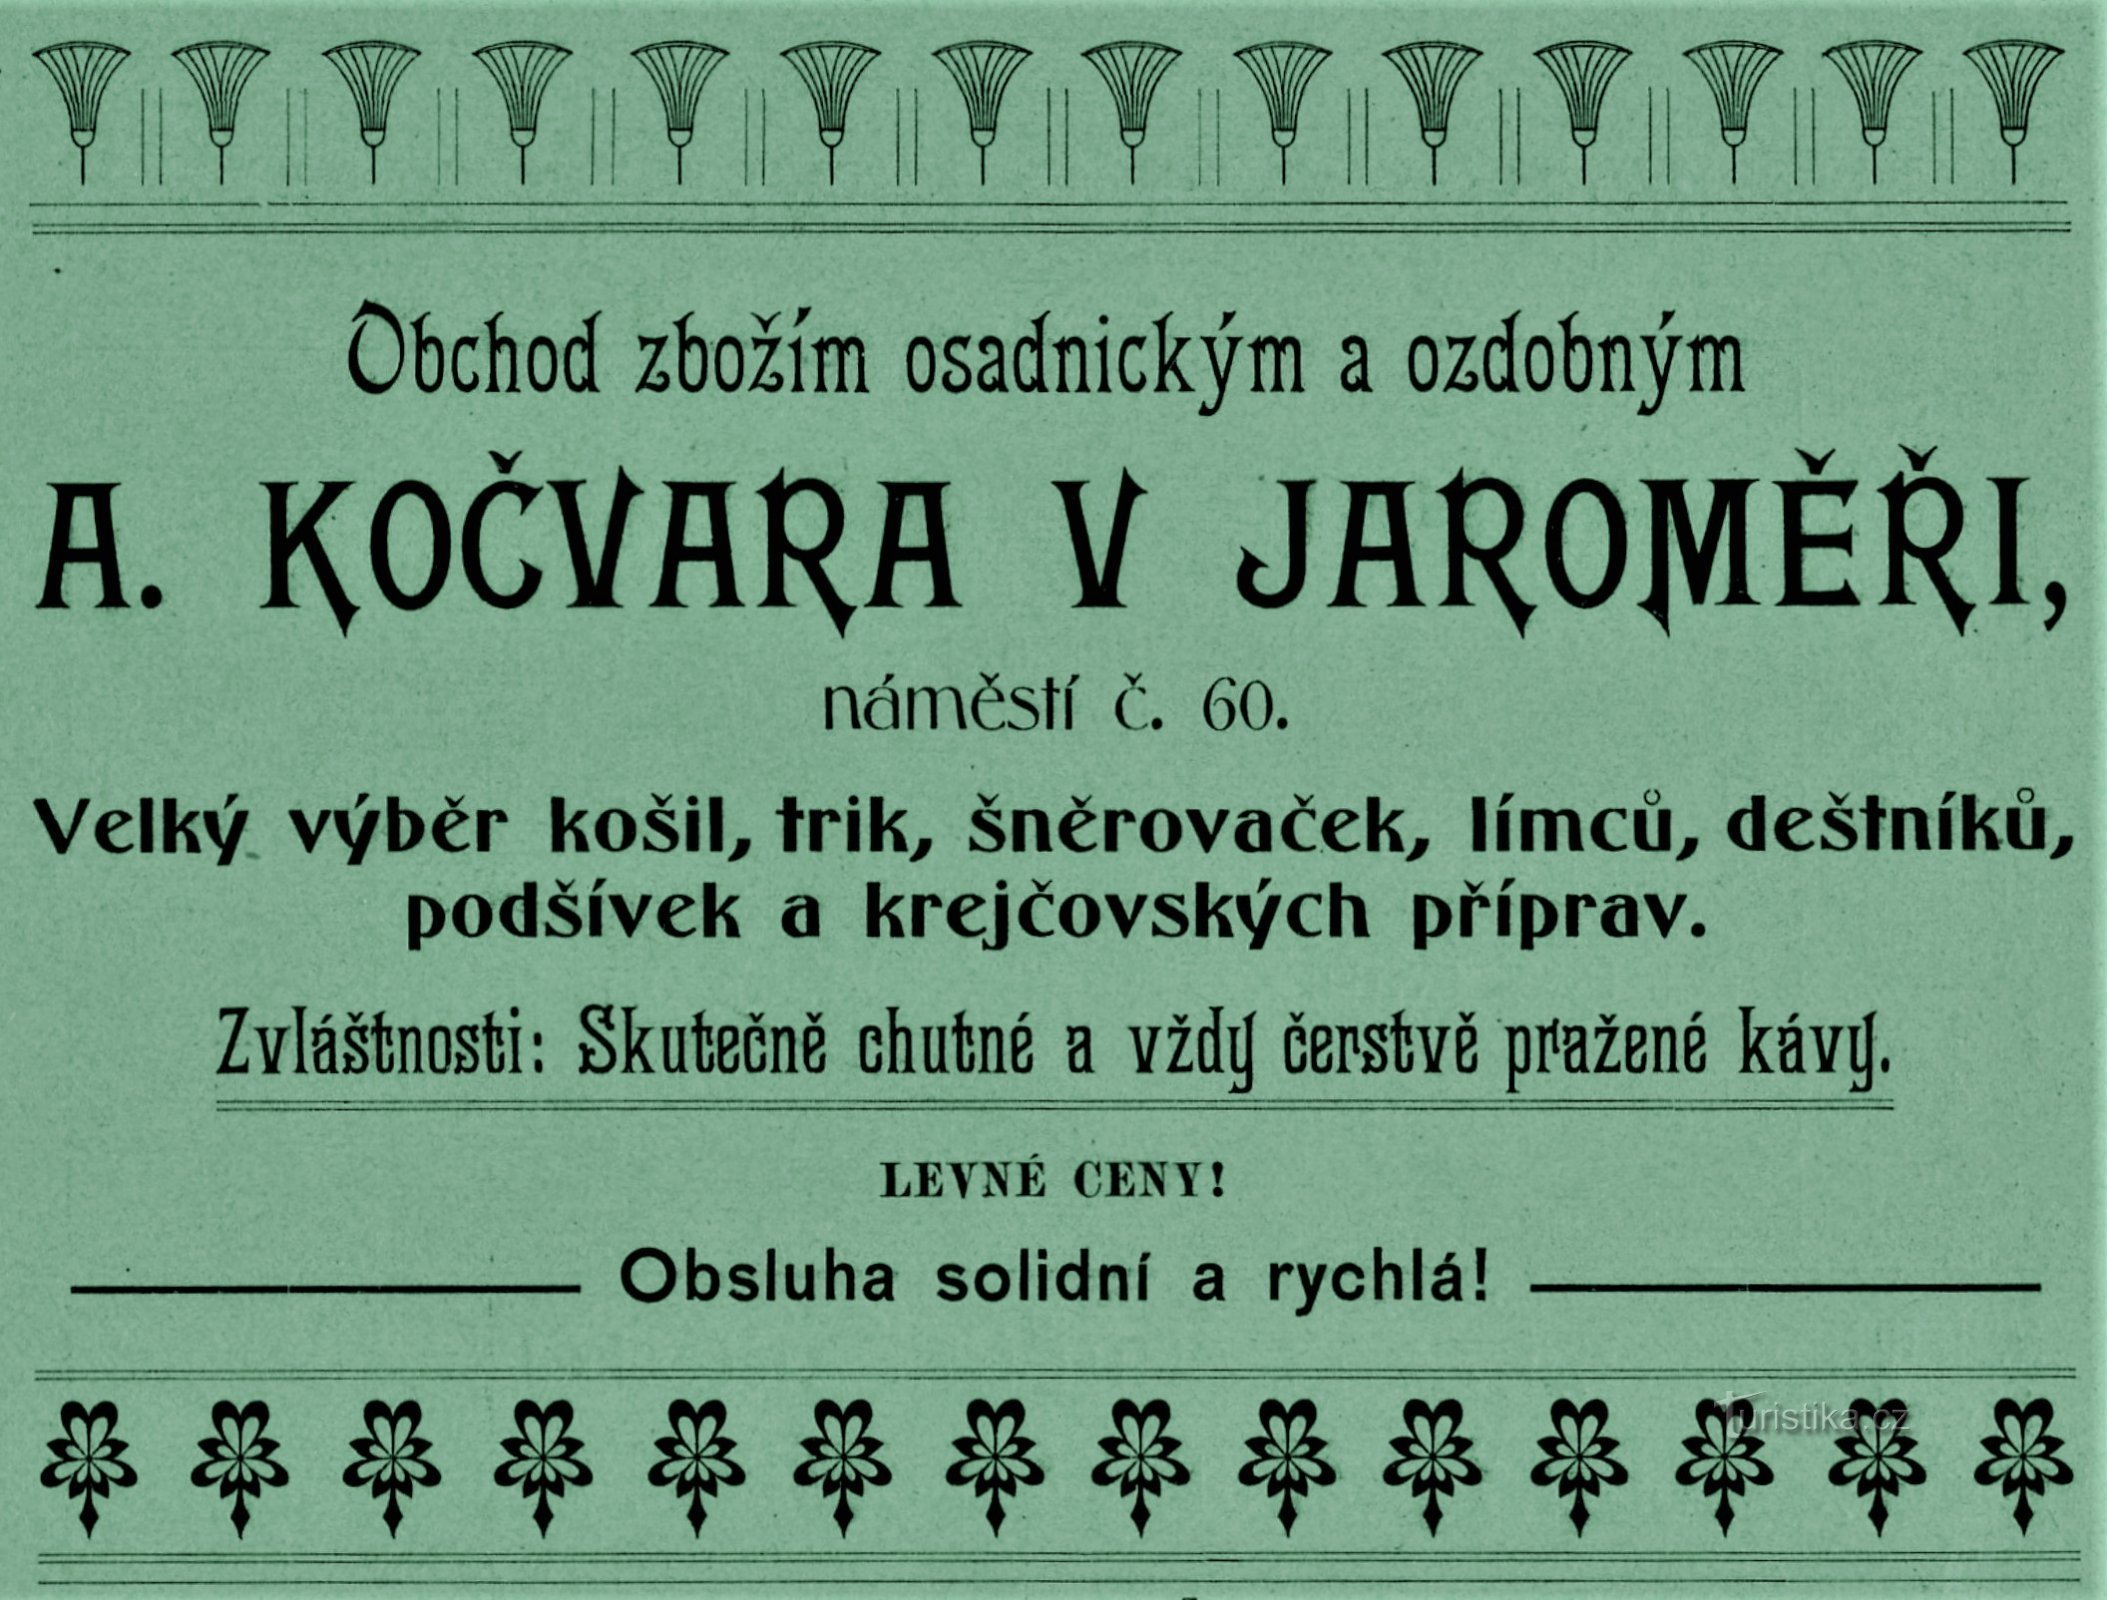 Quảng cáo đương đại của công ty A. Kočvara ở Jaroměř từ năm 1903